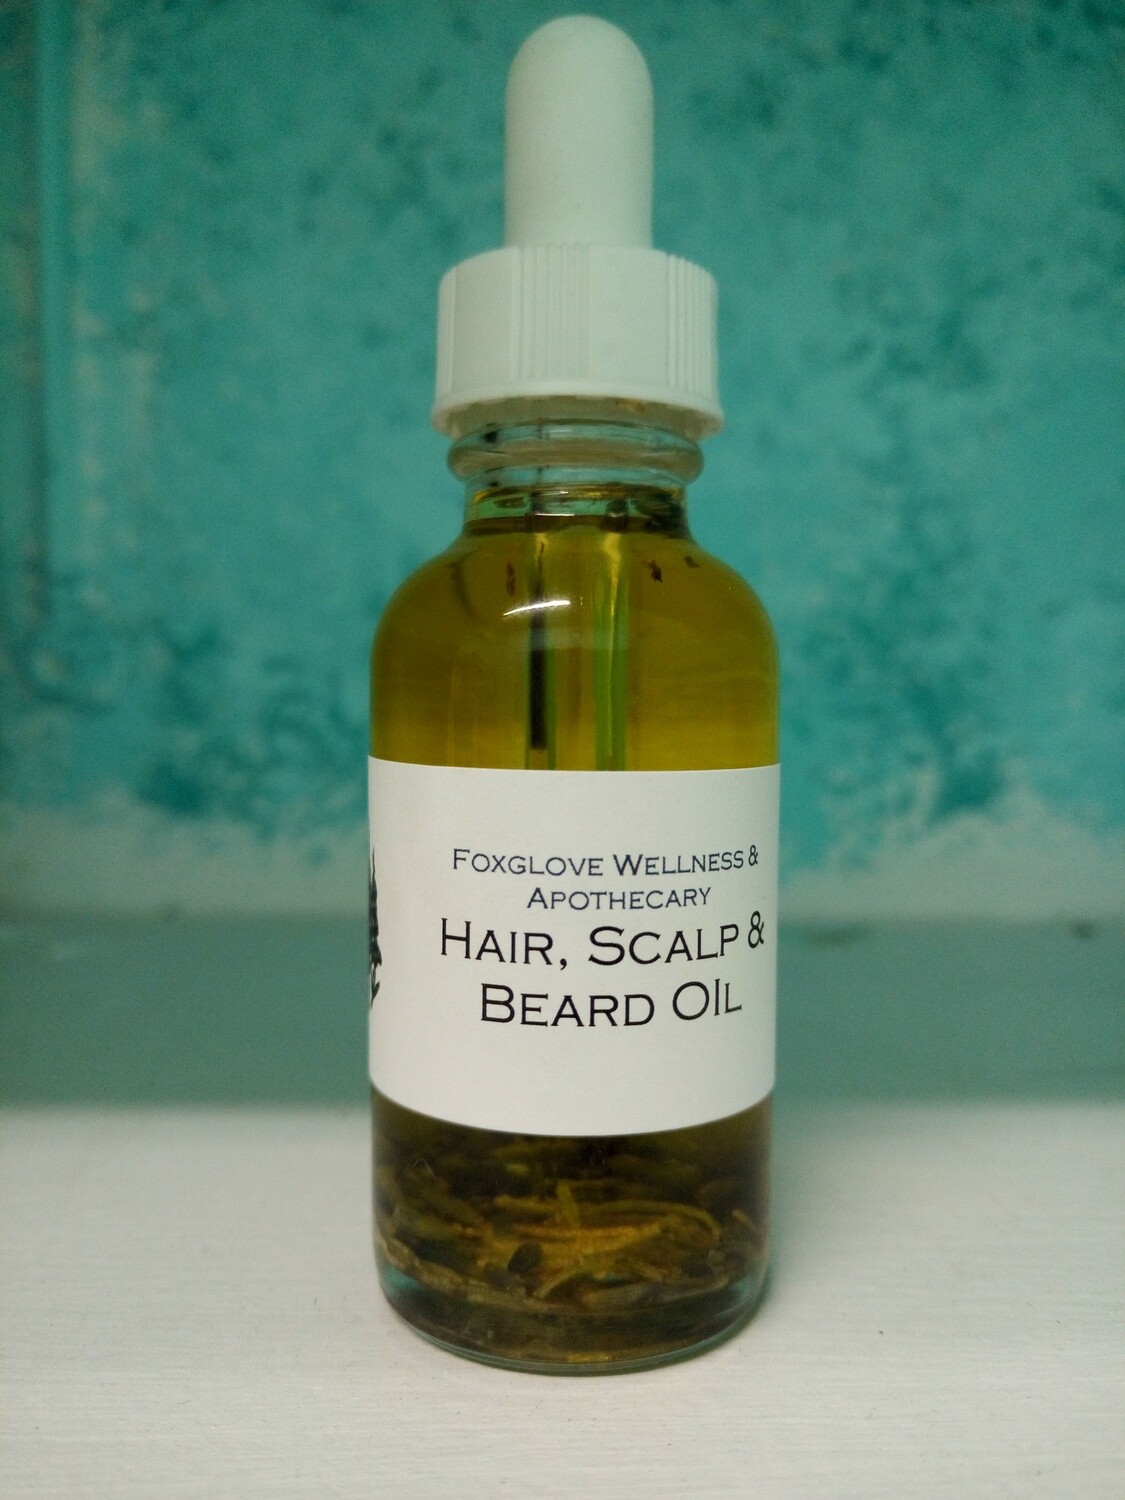 Hair and beard oil